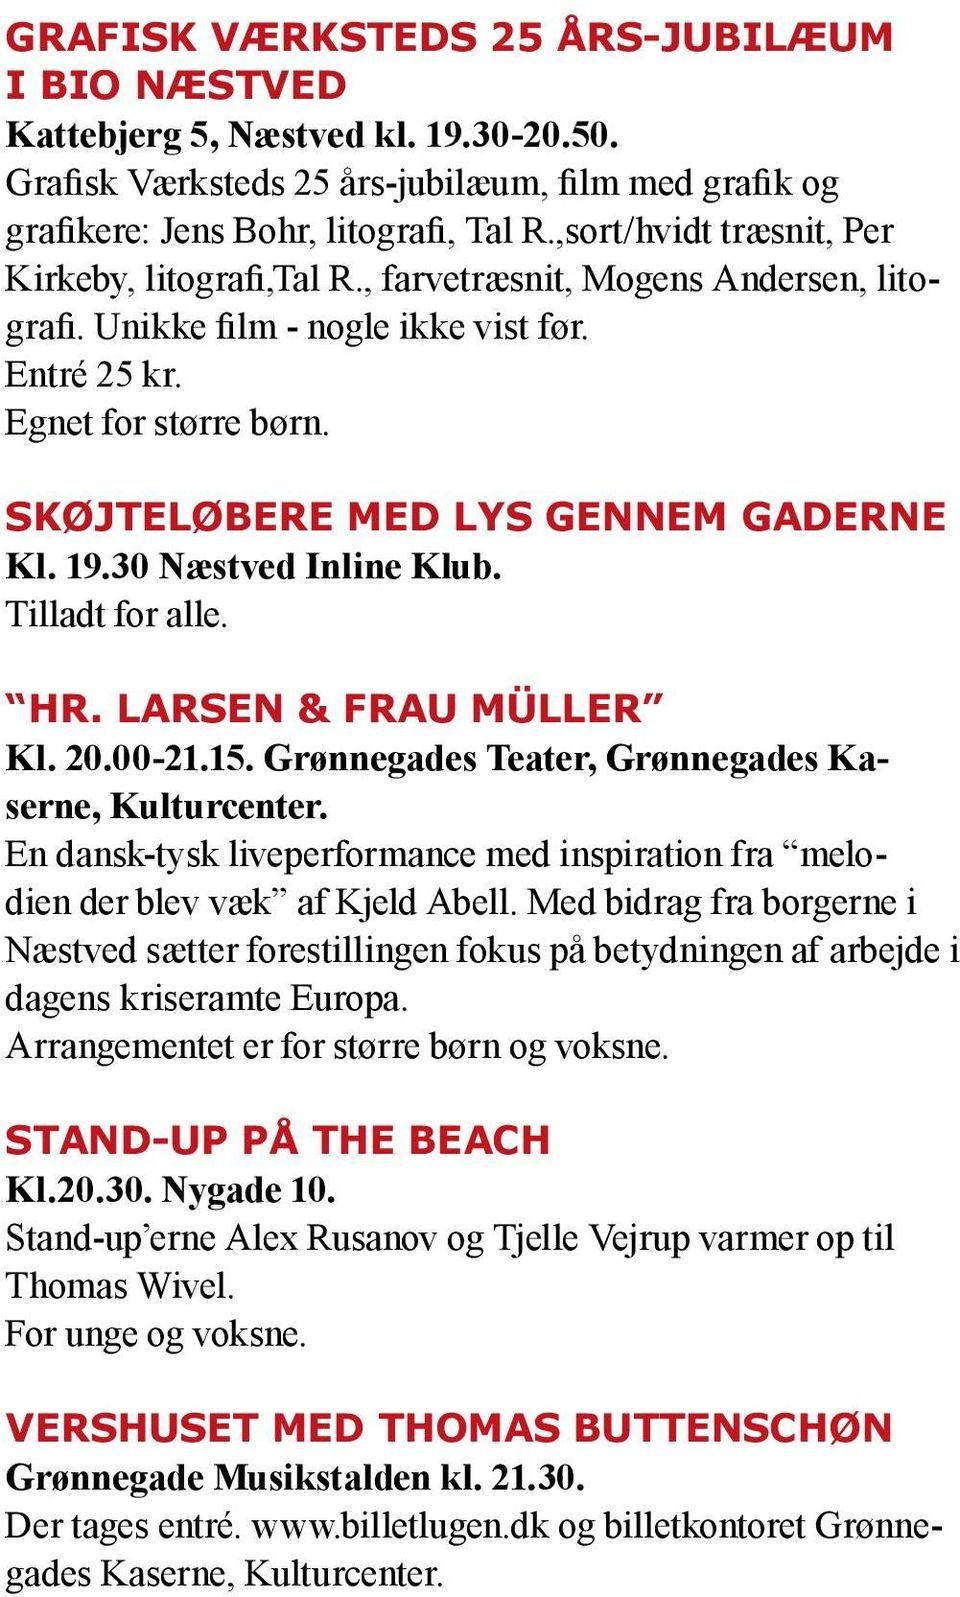 Skøjteløbere med lys gennem gaderne Kl. 19.30 Næstved Inline Klub. Tilladt for alle. Hr. Larsen & Frau Müller Kl. 20.00-21.15. Grønnegades Teater, Grønnegades Kaserne, Kulturcenter.